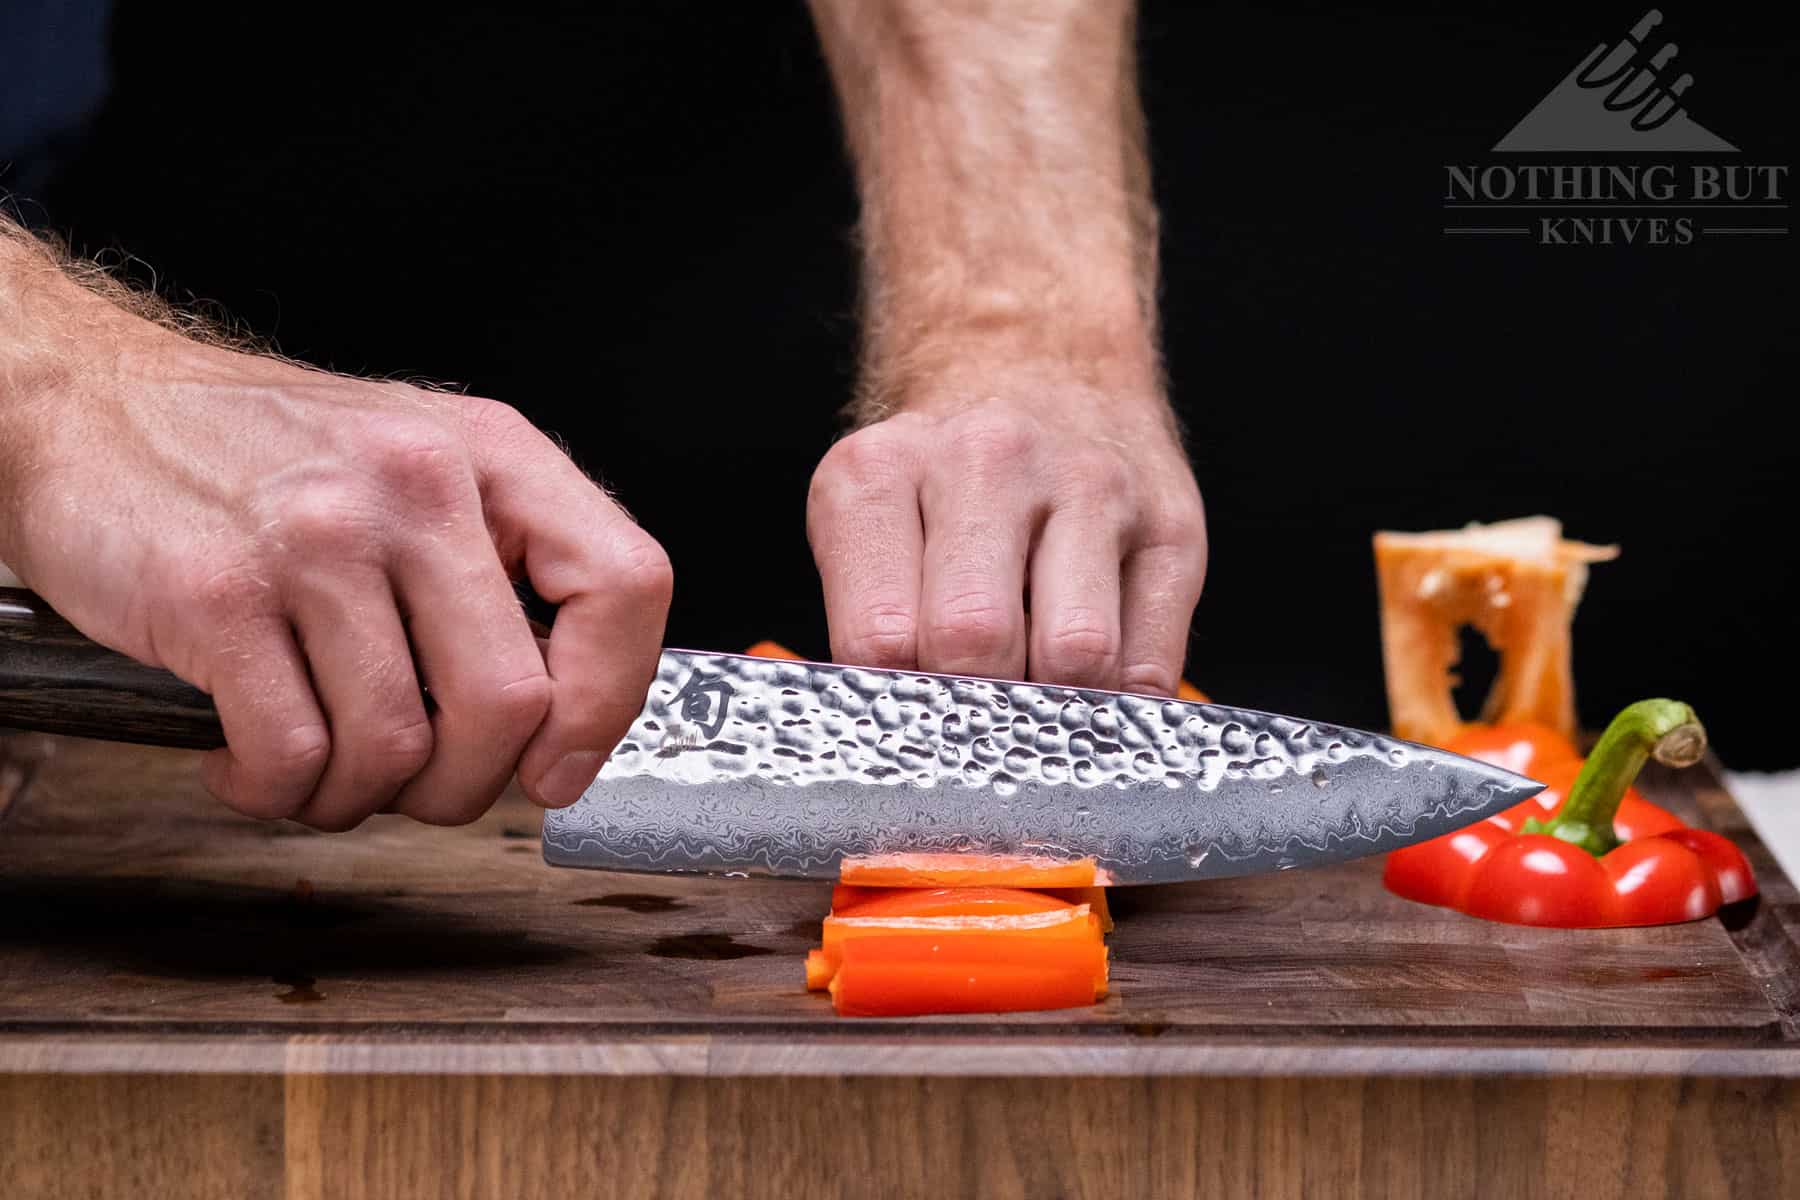 https://www.nothingbutknives.com/wp-content/uploads/2022/07/Shun-Premier-8-Inch-Chef-Knife.jpg